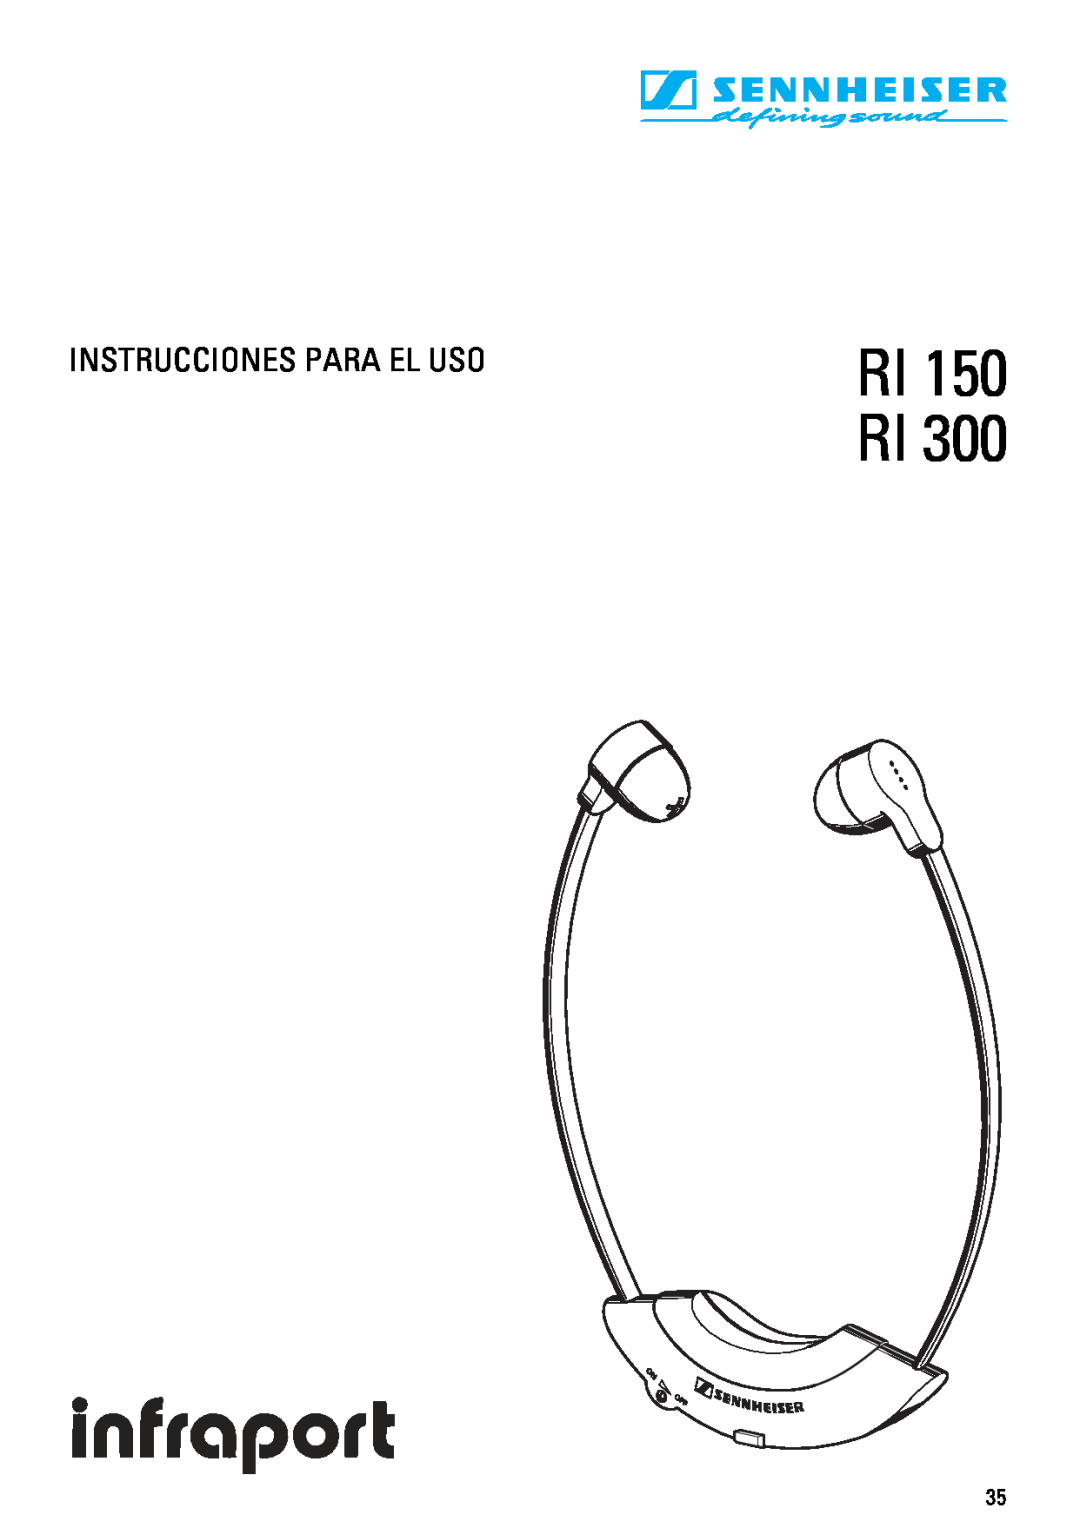 Sennheiser RI 300 manual Instrucciones Para El Uso, RI 150 RI 